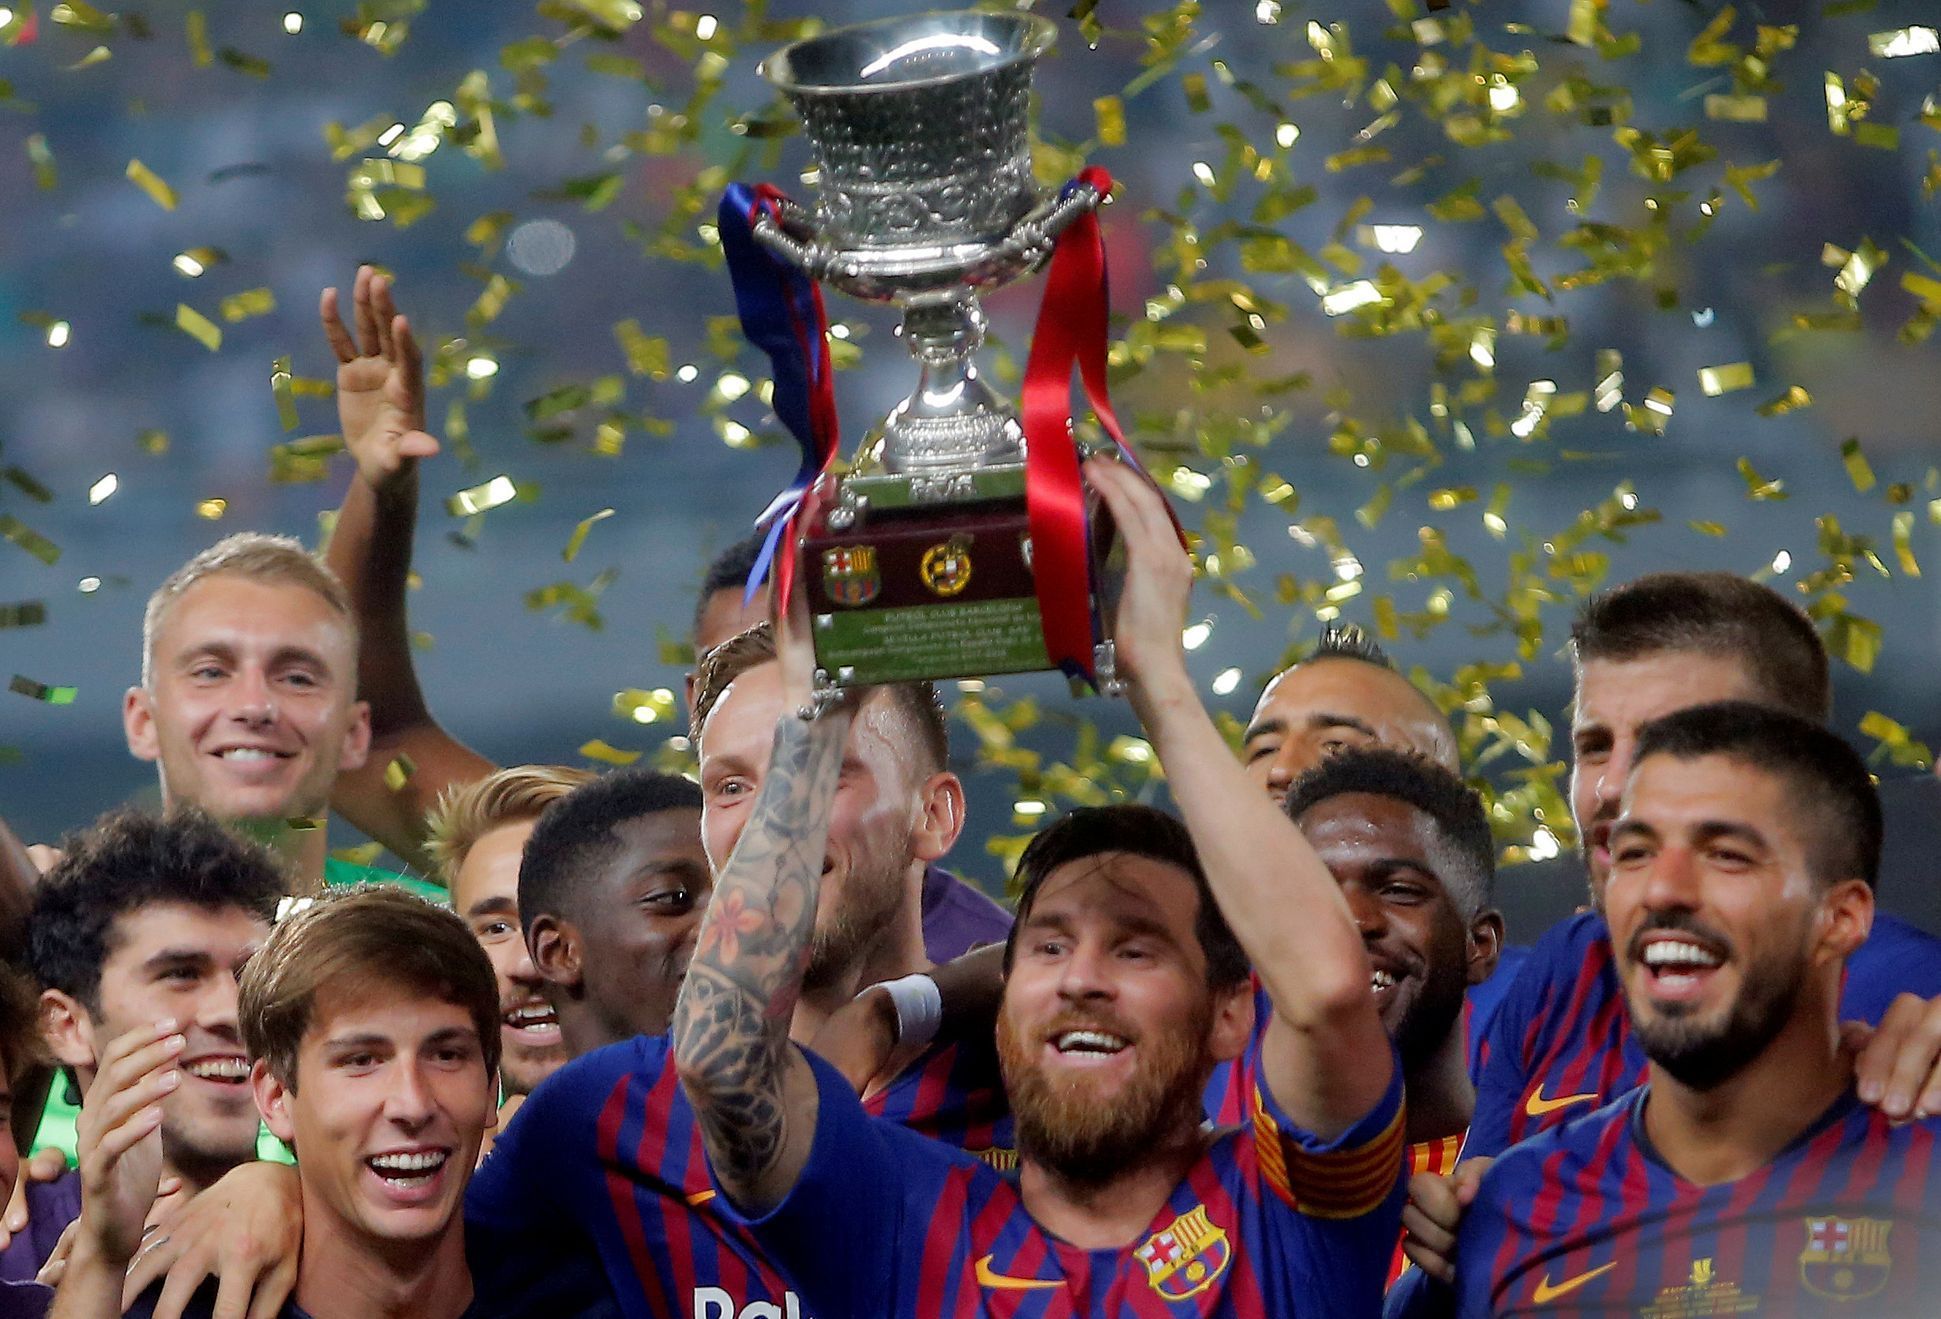 Barcelona vyhrála superpohár 2018